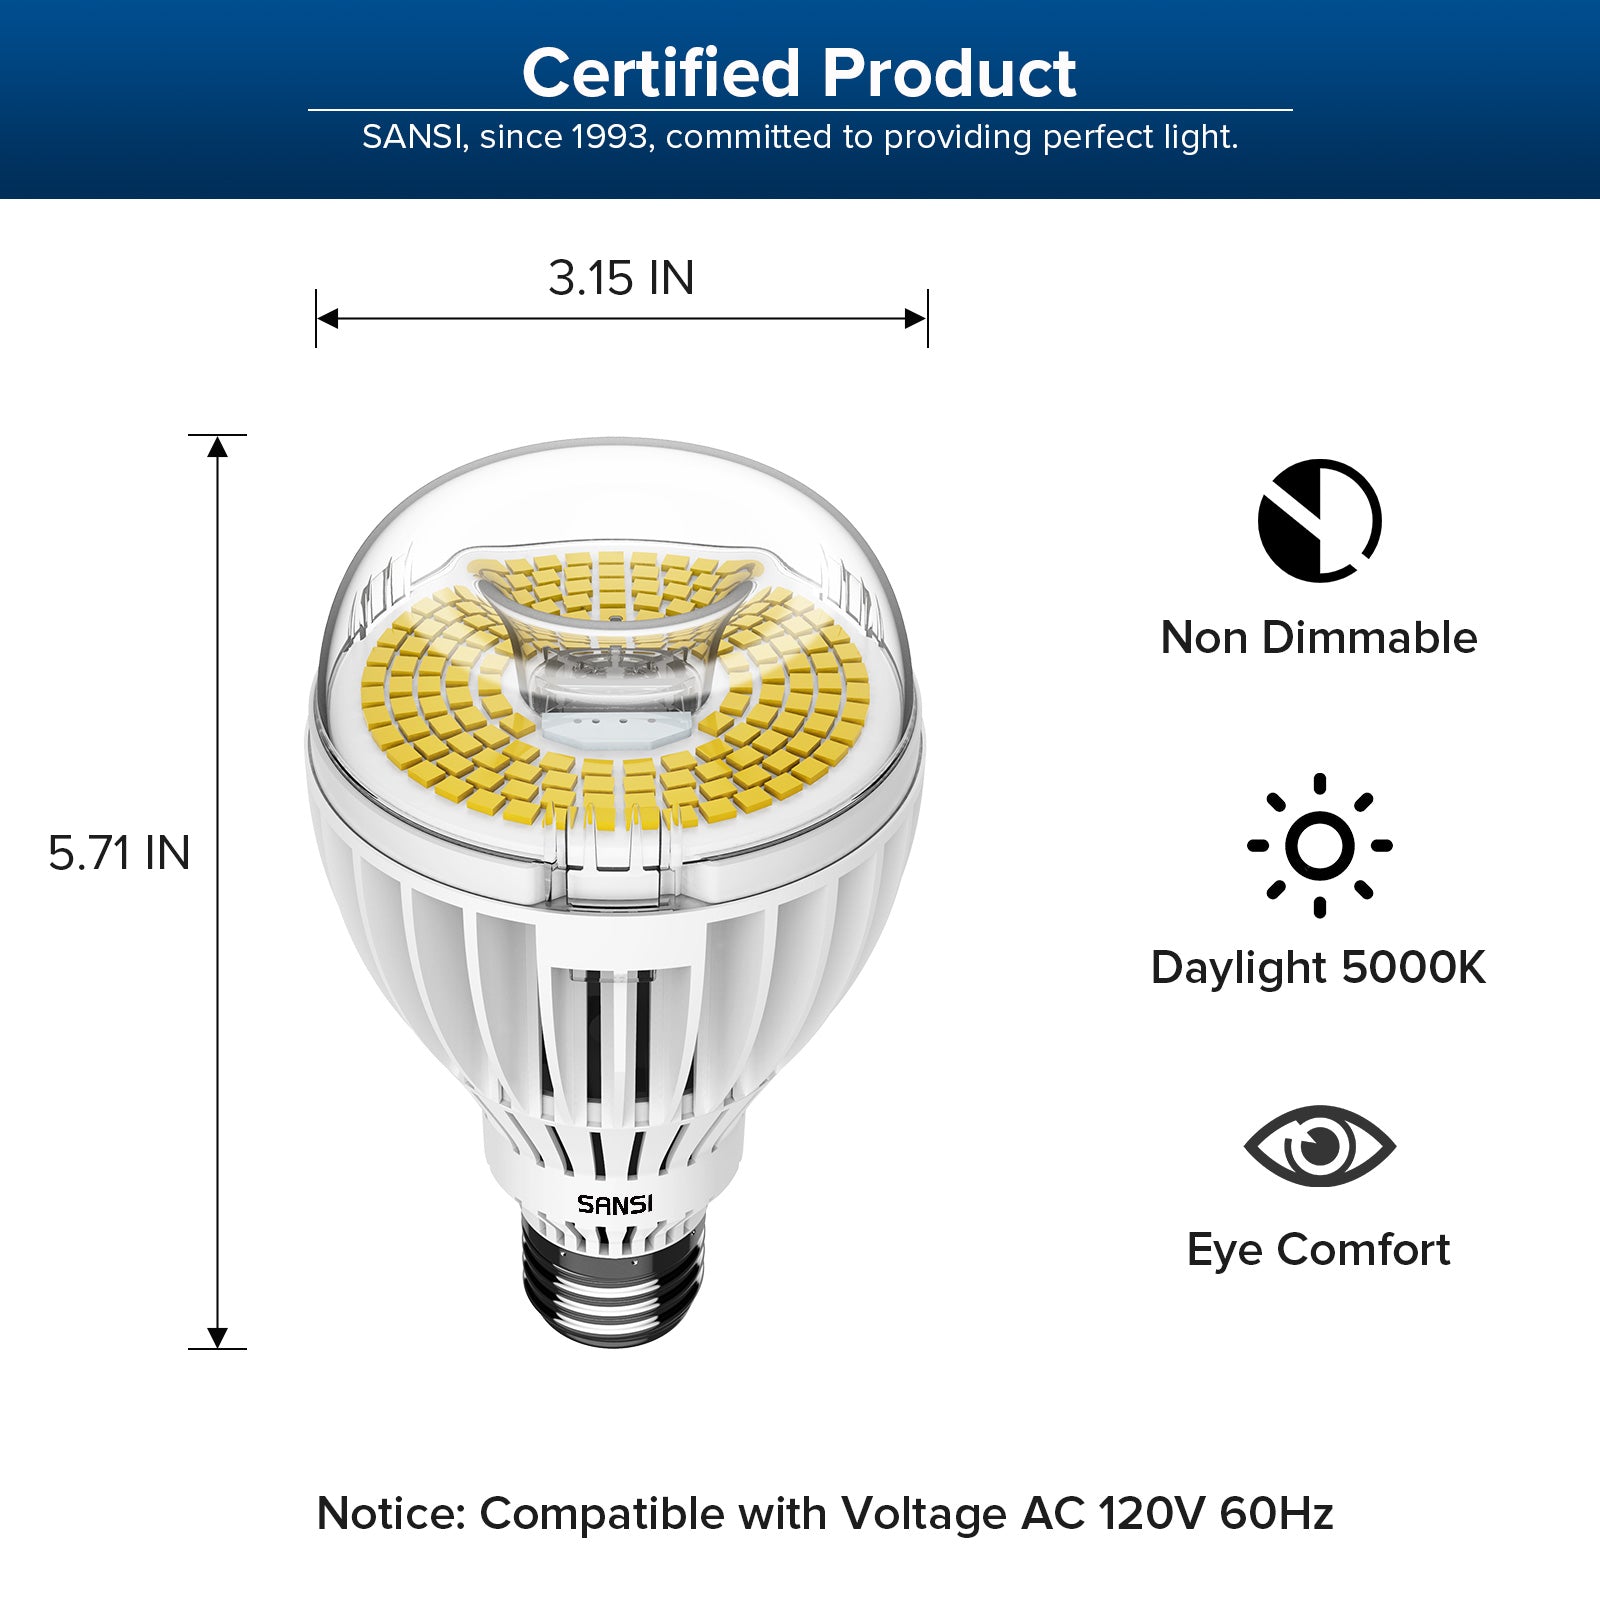 2 ampoules M-Tech LED 6000 K C5W 36mm - Feu Vert